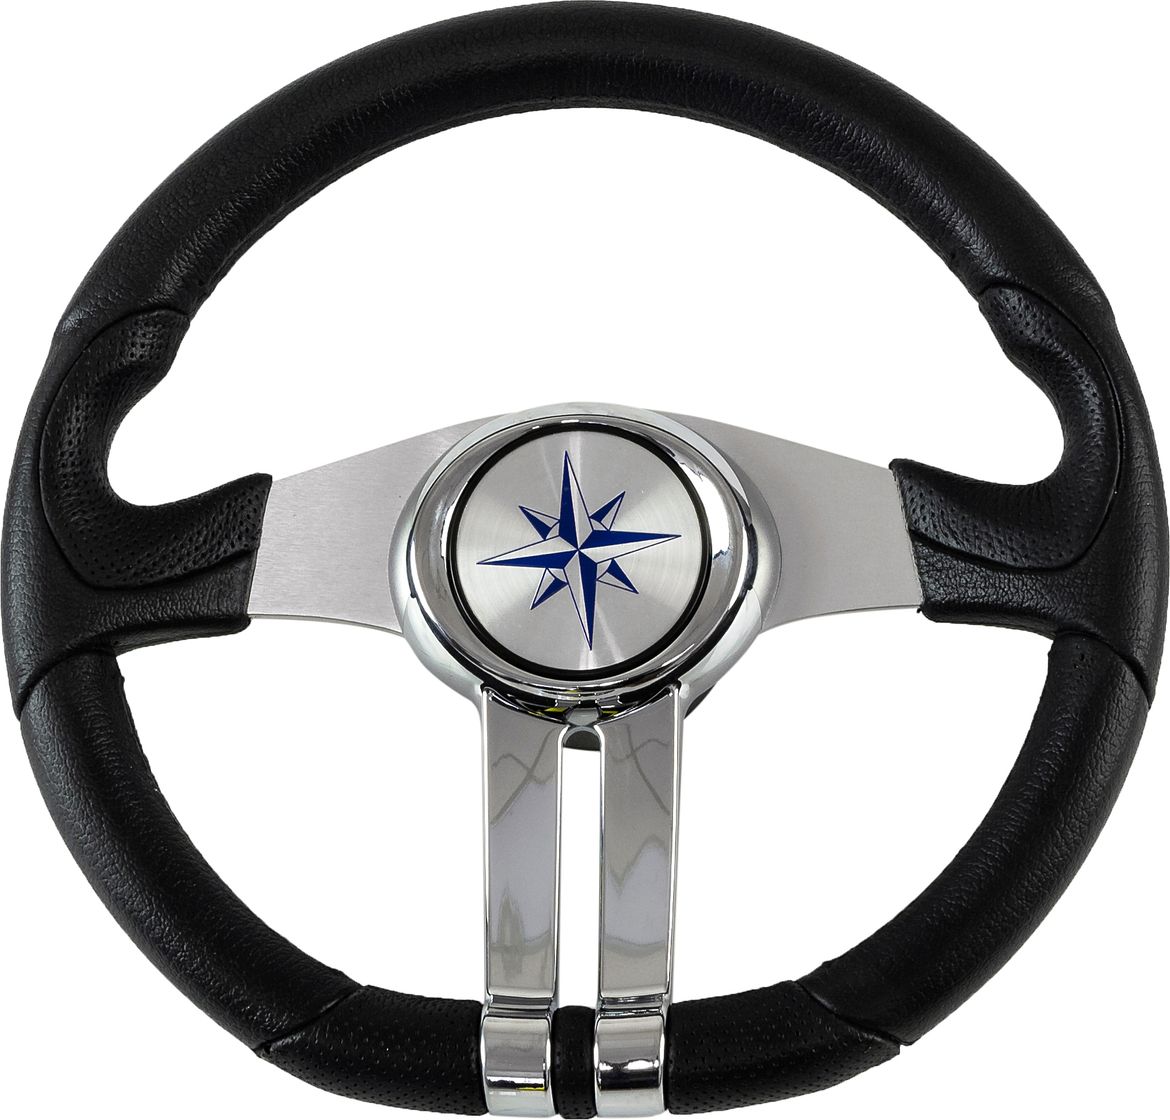 Рулевое колесо BALTIC обод черный, спицы серебряные д. 320 мм VN133203-01 рулевое колесо leader tanegum белый обод серебряные спицы д 330 мм vn7330 08